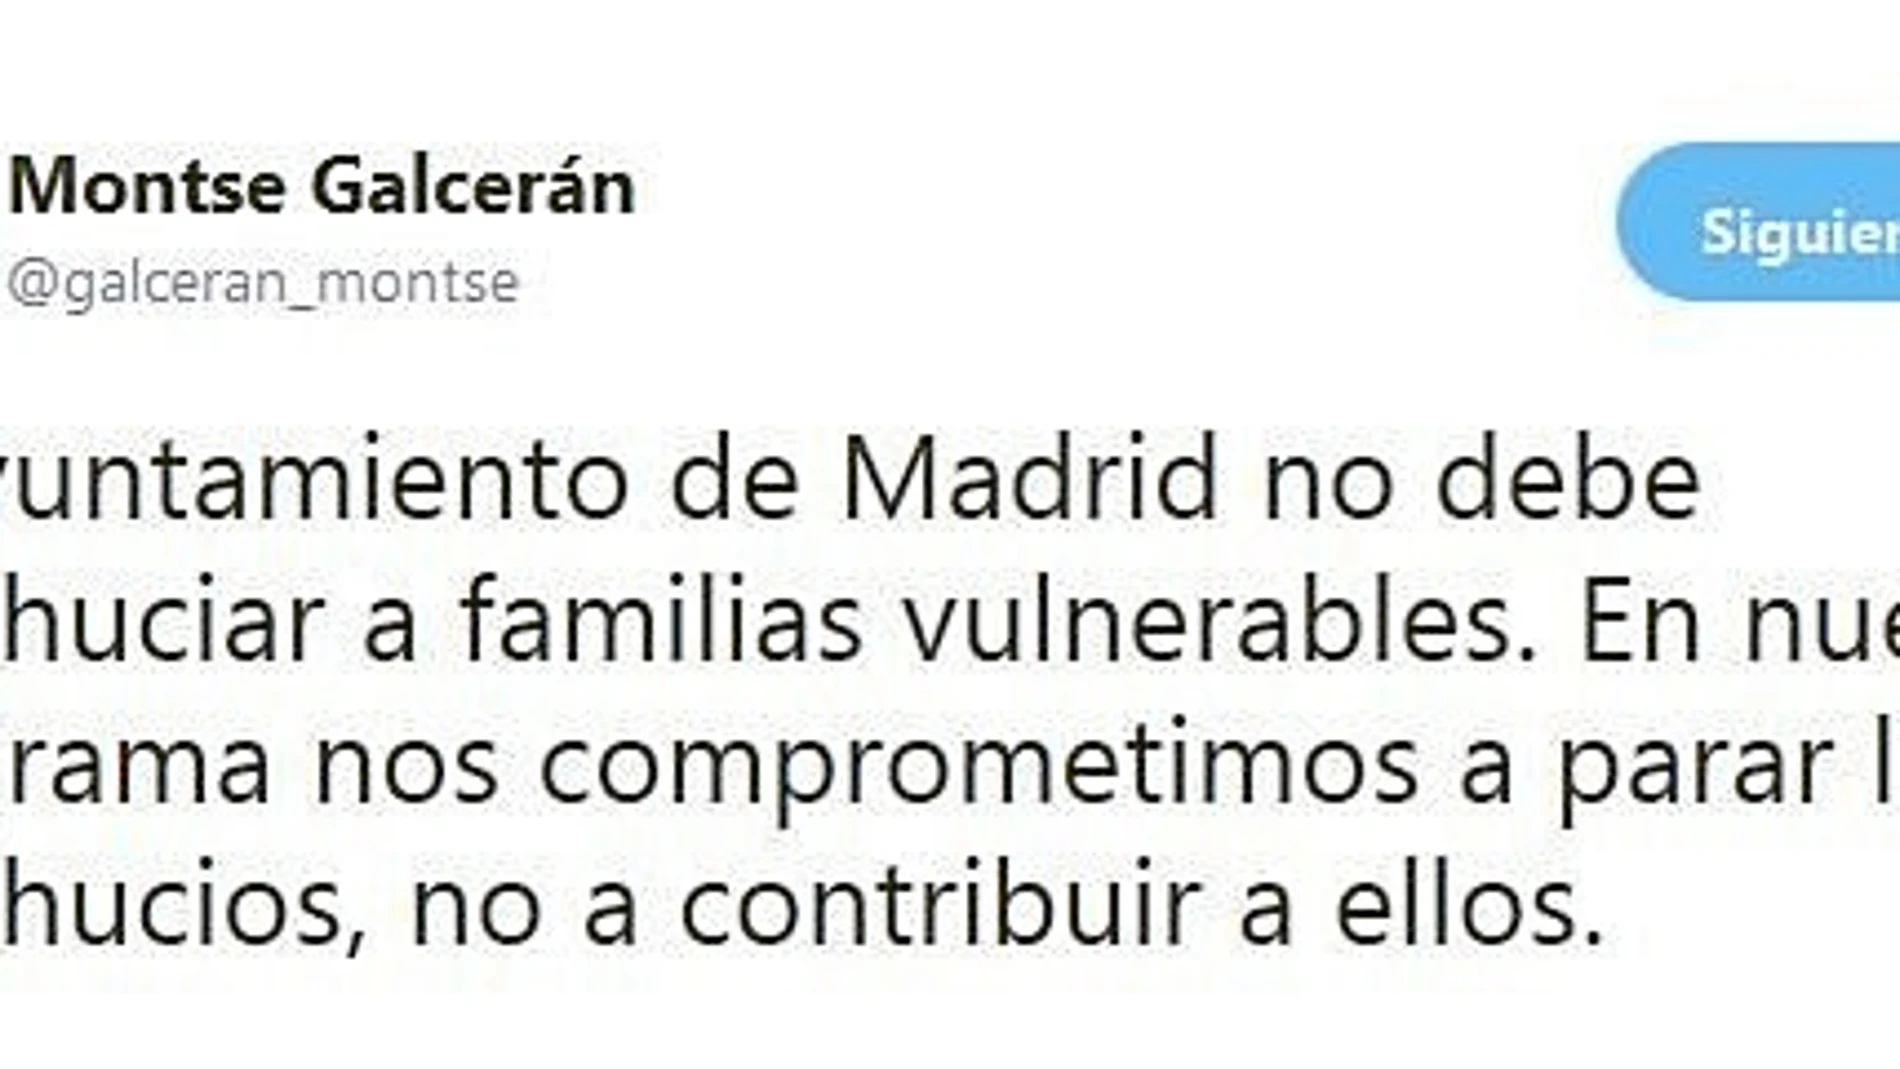 La edil Montserrat Galcerán del Gobierno de Carmena criticó ayer en Twitter la política antidesahucios del Ayuntamiento